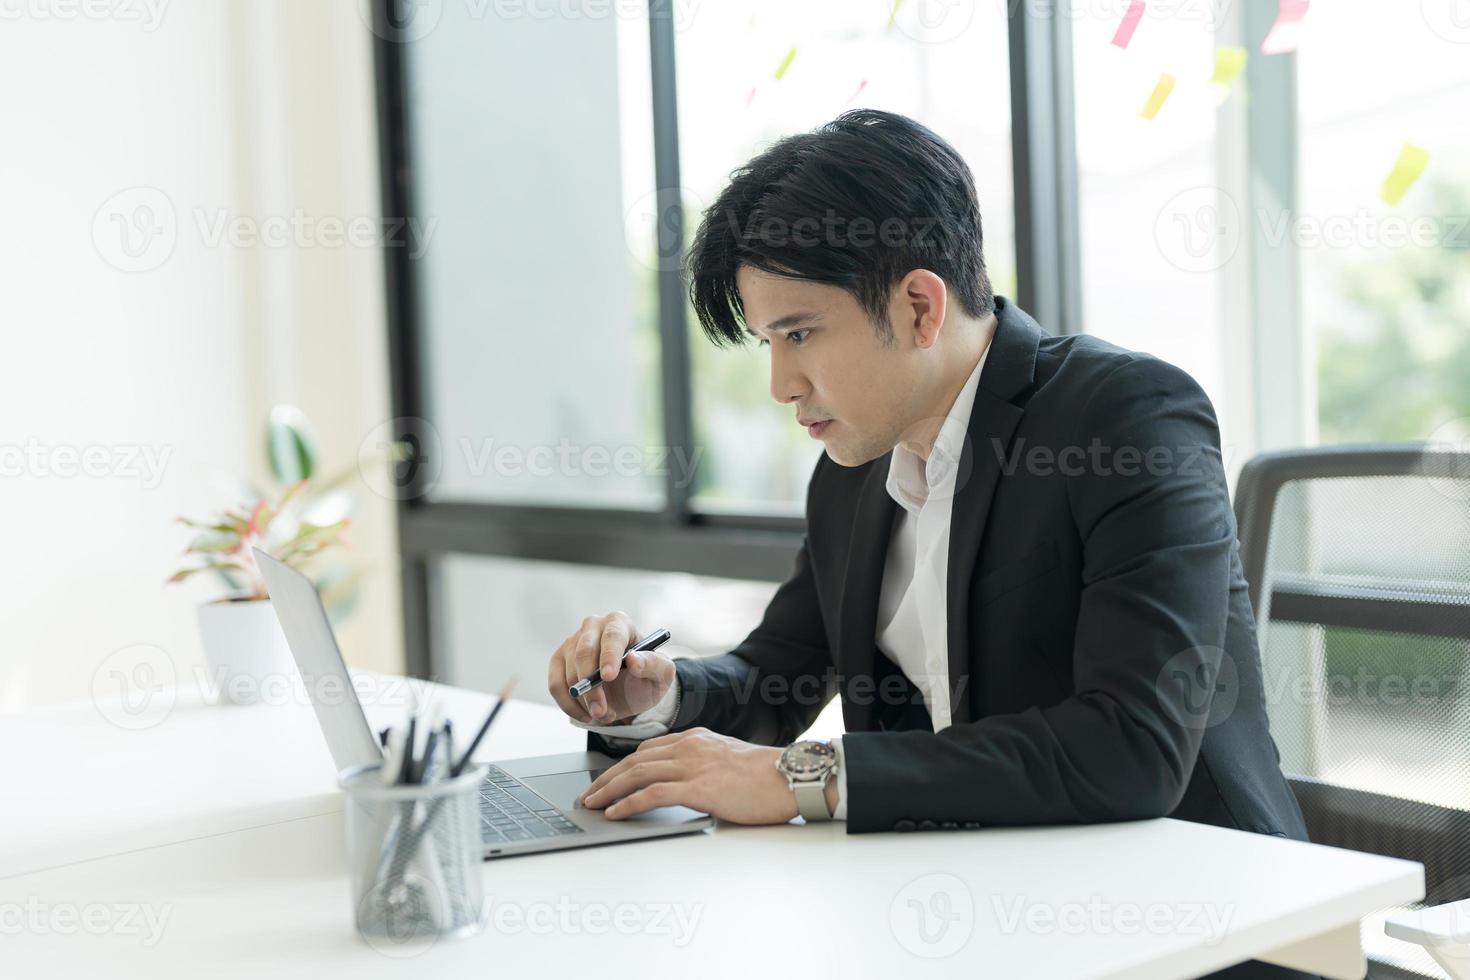 jong zakenman opening een notitieboekje visie e-mails van klanten verzonden. en schrijven naar beneden de details. foto